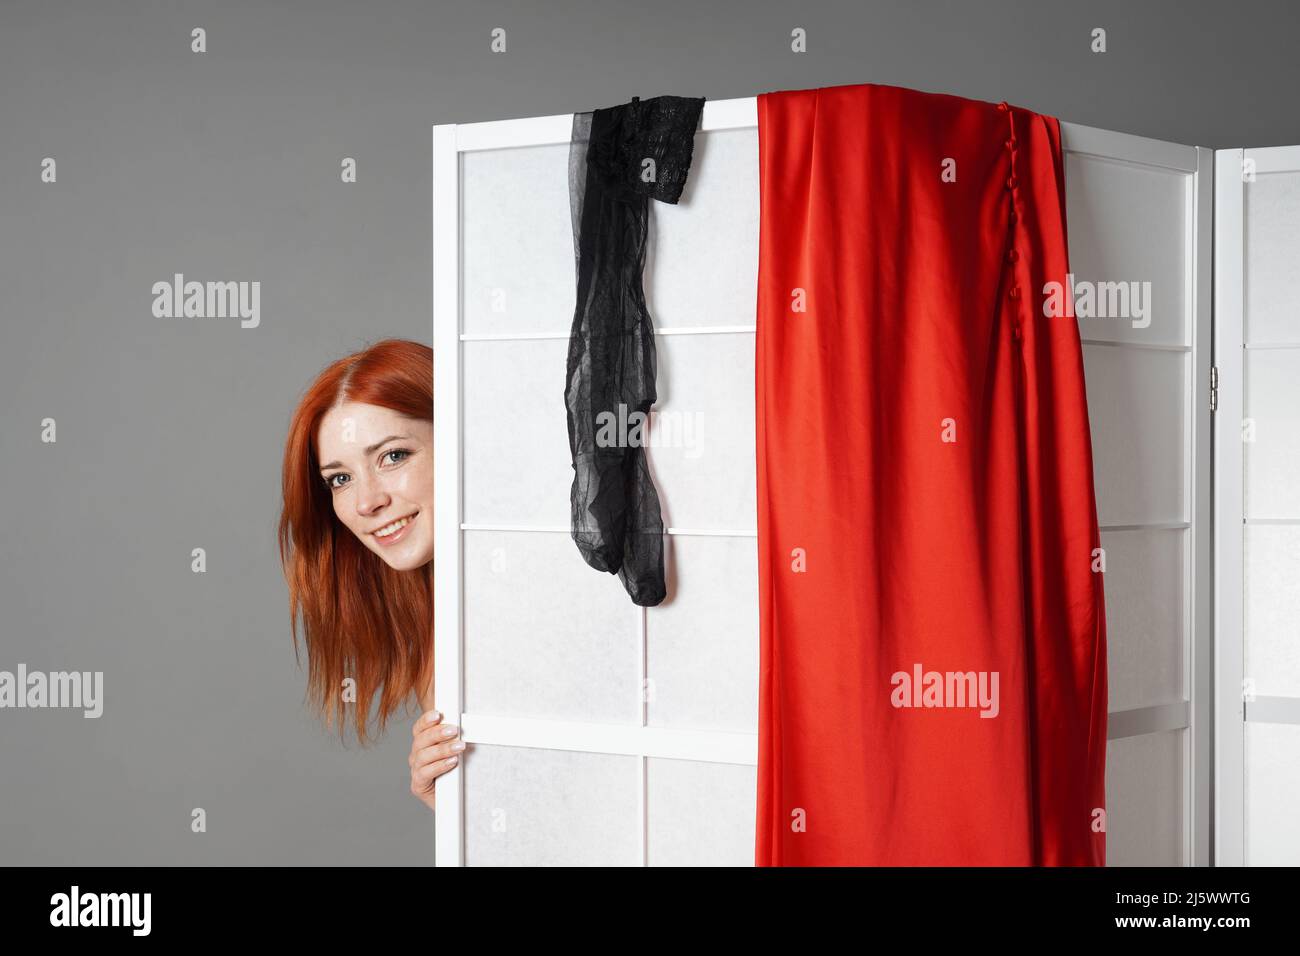 una mujer joven apesta por detrás de la pantalla plegable mientras se desnuda o se cambia de ropa Foto de stock